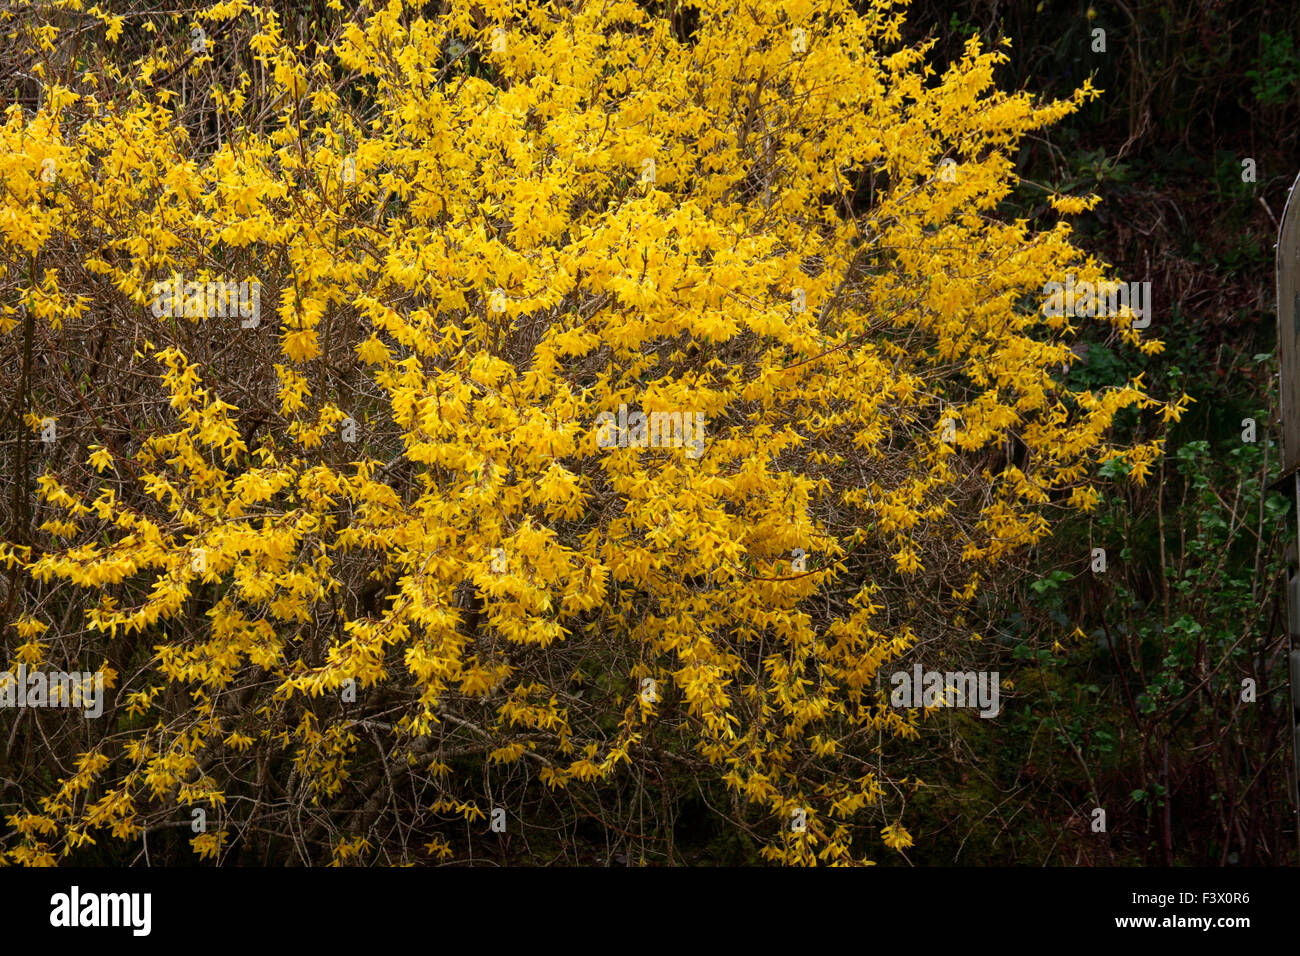 Forsythia x intermedia 'Lynwood' shrub in flower Stock Photo